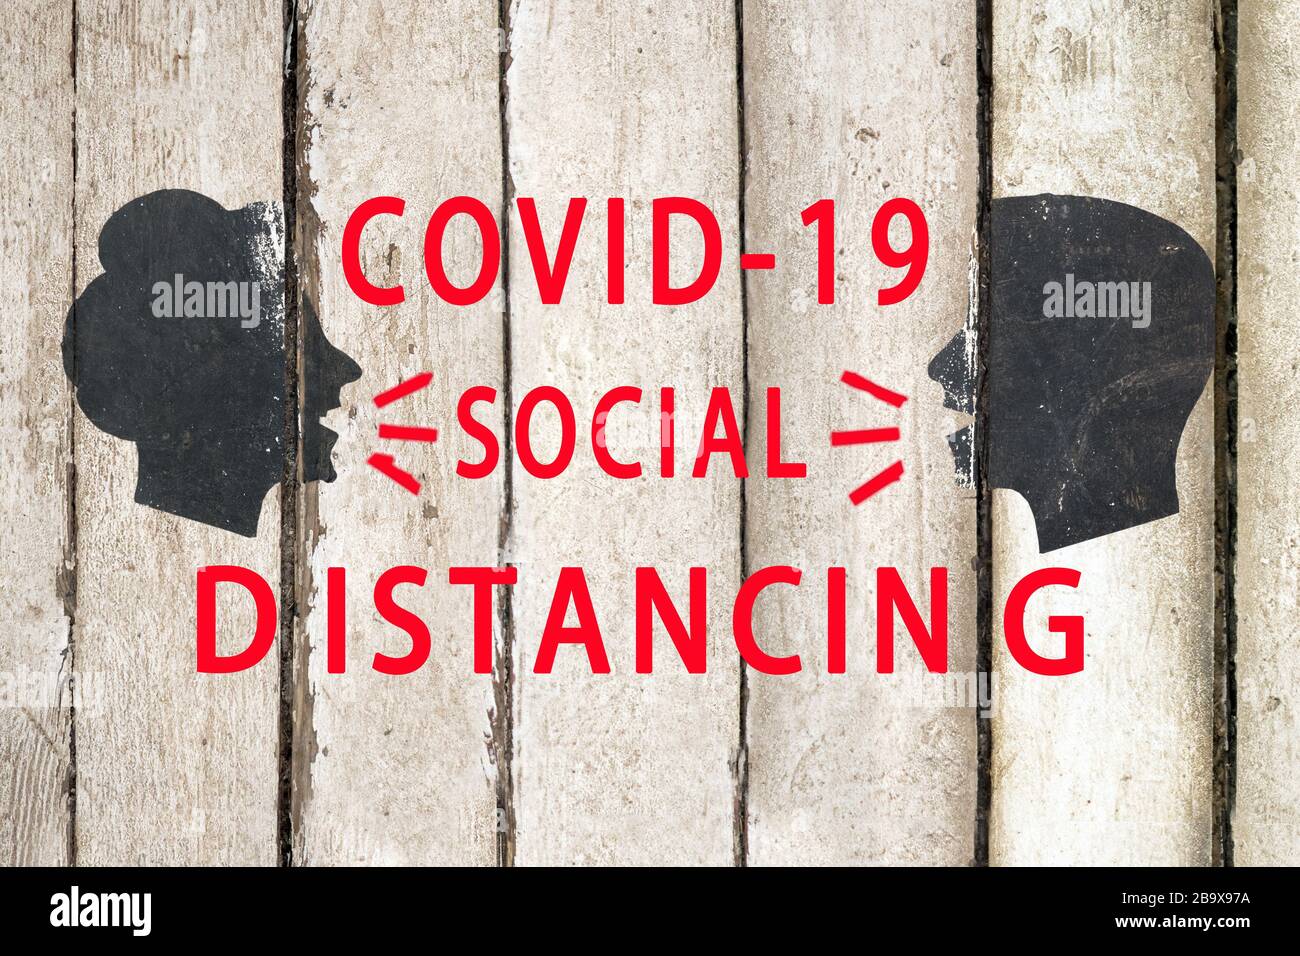 Sperrregeln. Konzept der sozialen Distanzierung. COVID 19 Coronavirus Hintergrund. NCov, sars cov 2. Pandemie-Quarantäne. Person spricht, hustet, niest Stockfoto